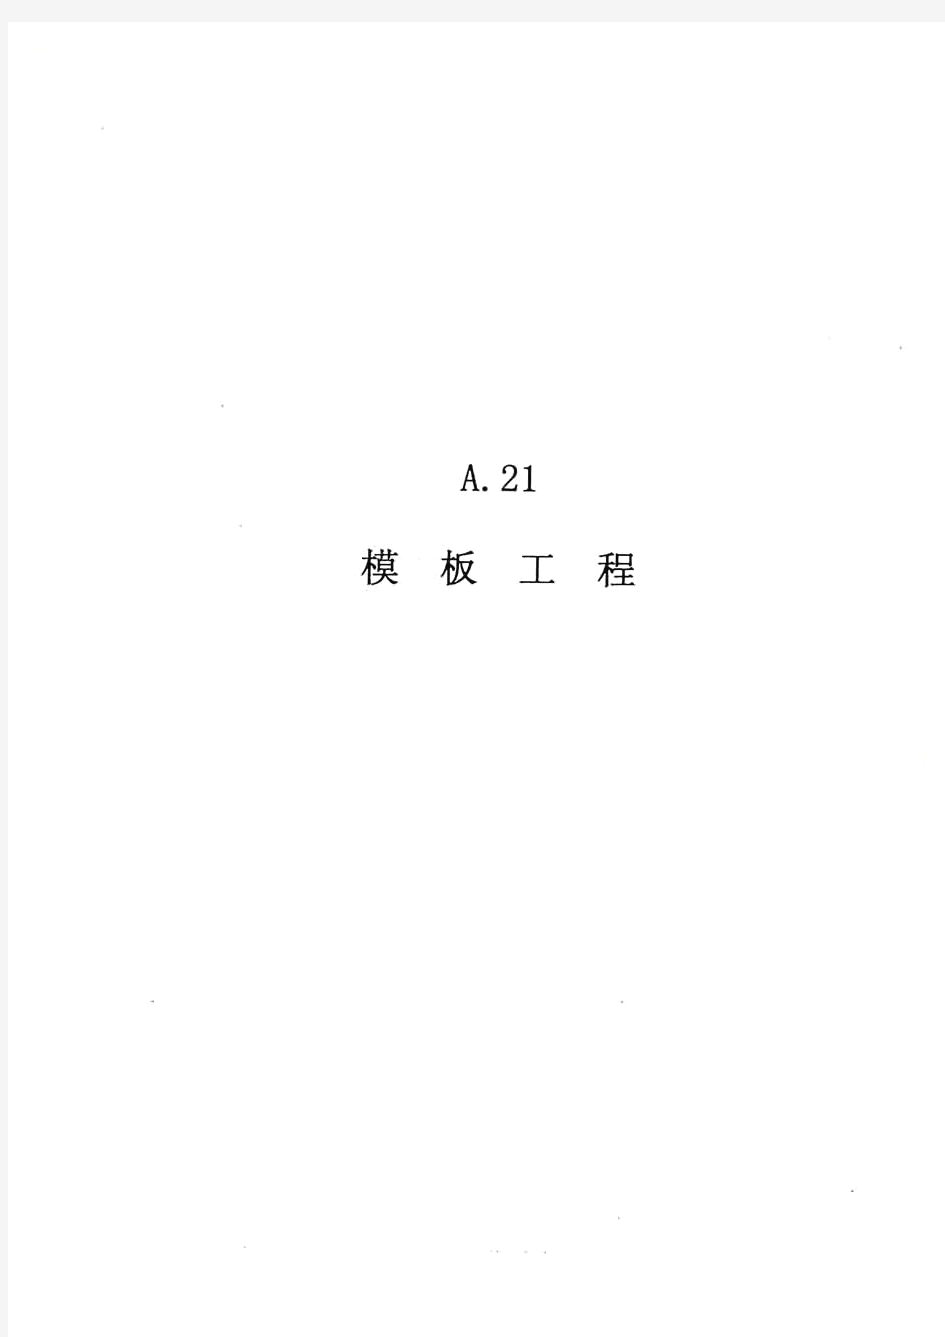 广东省建筑与装饰工程综合定额(2010)-模板部分